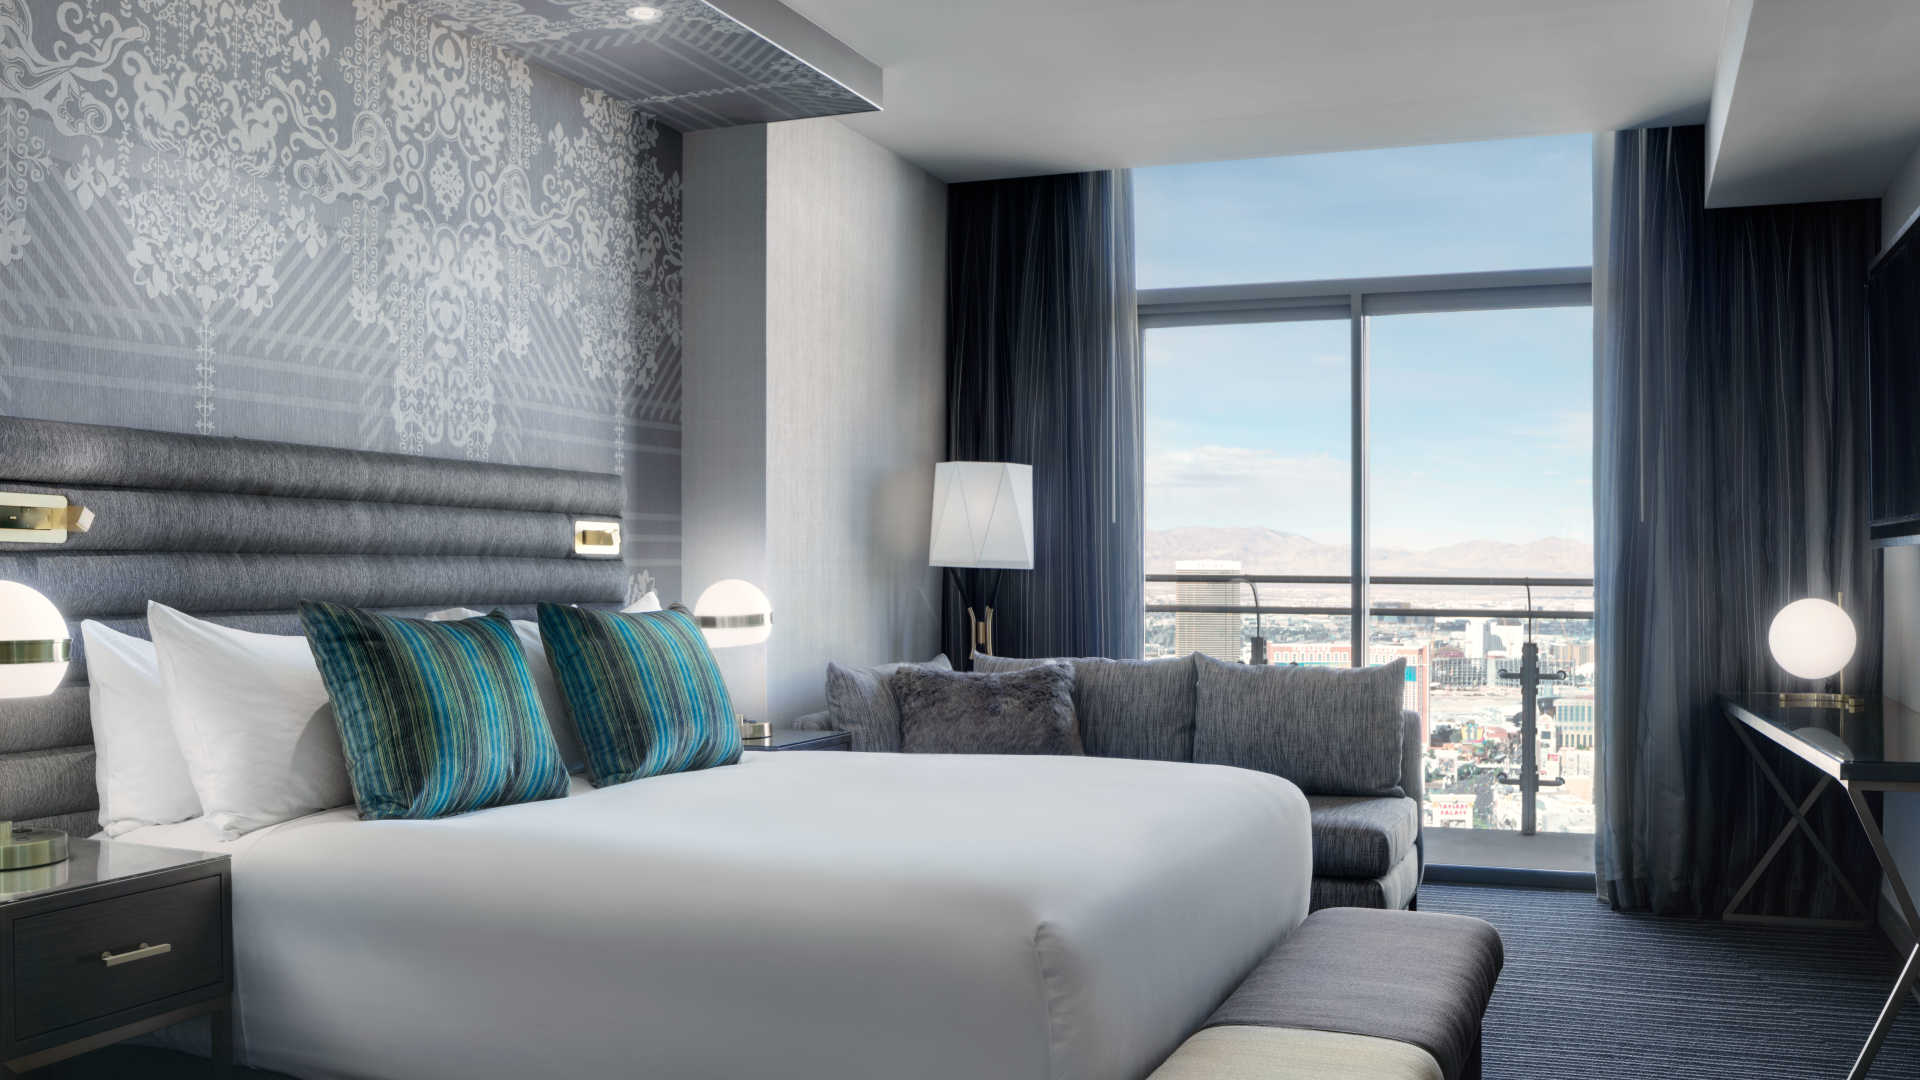 Hotel Rooms in Las Vegas, The Luxury King Room